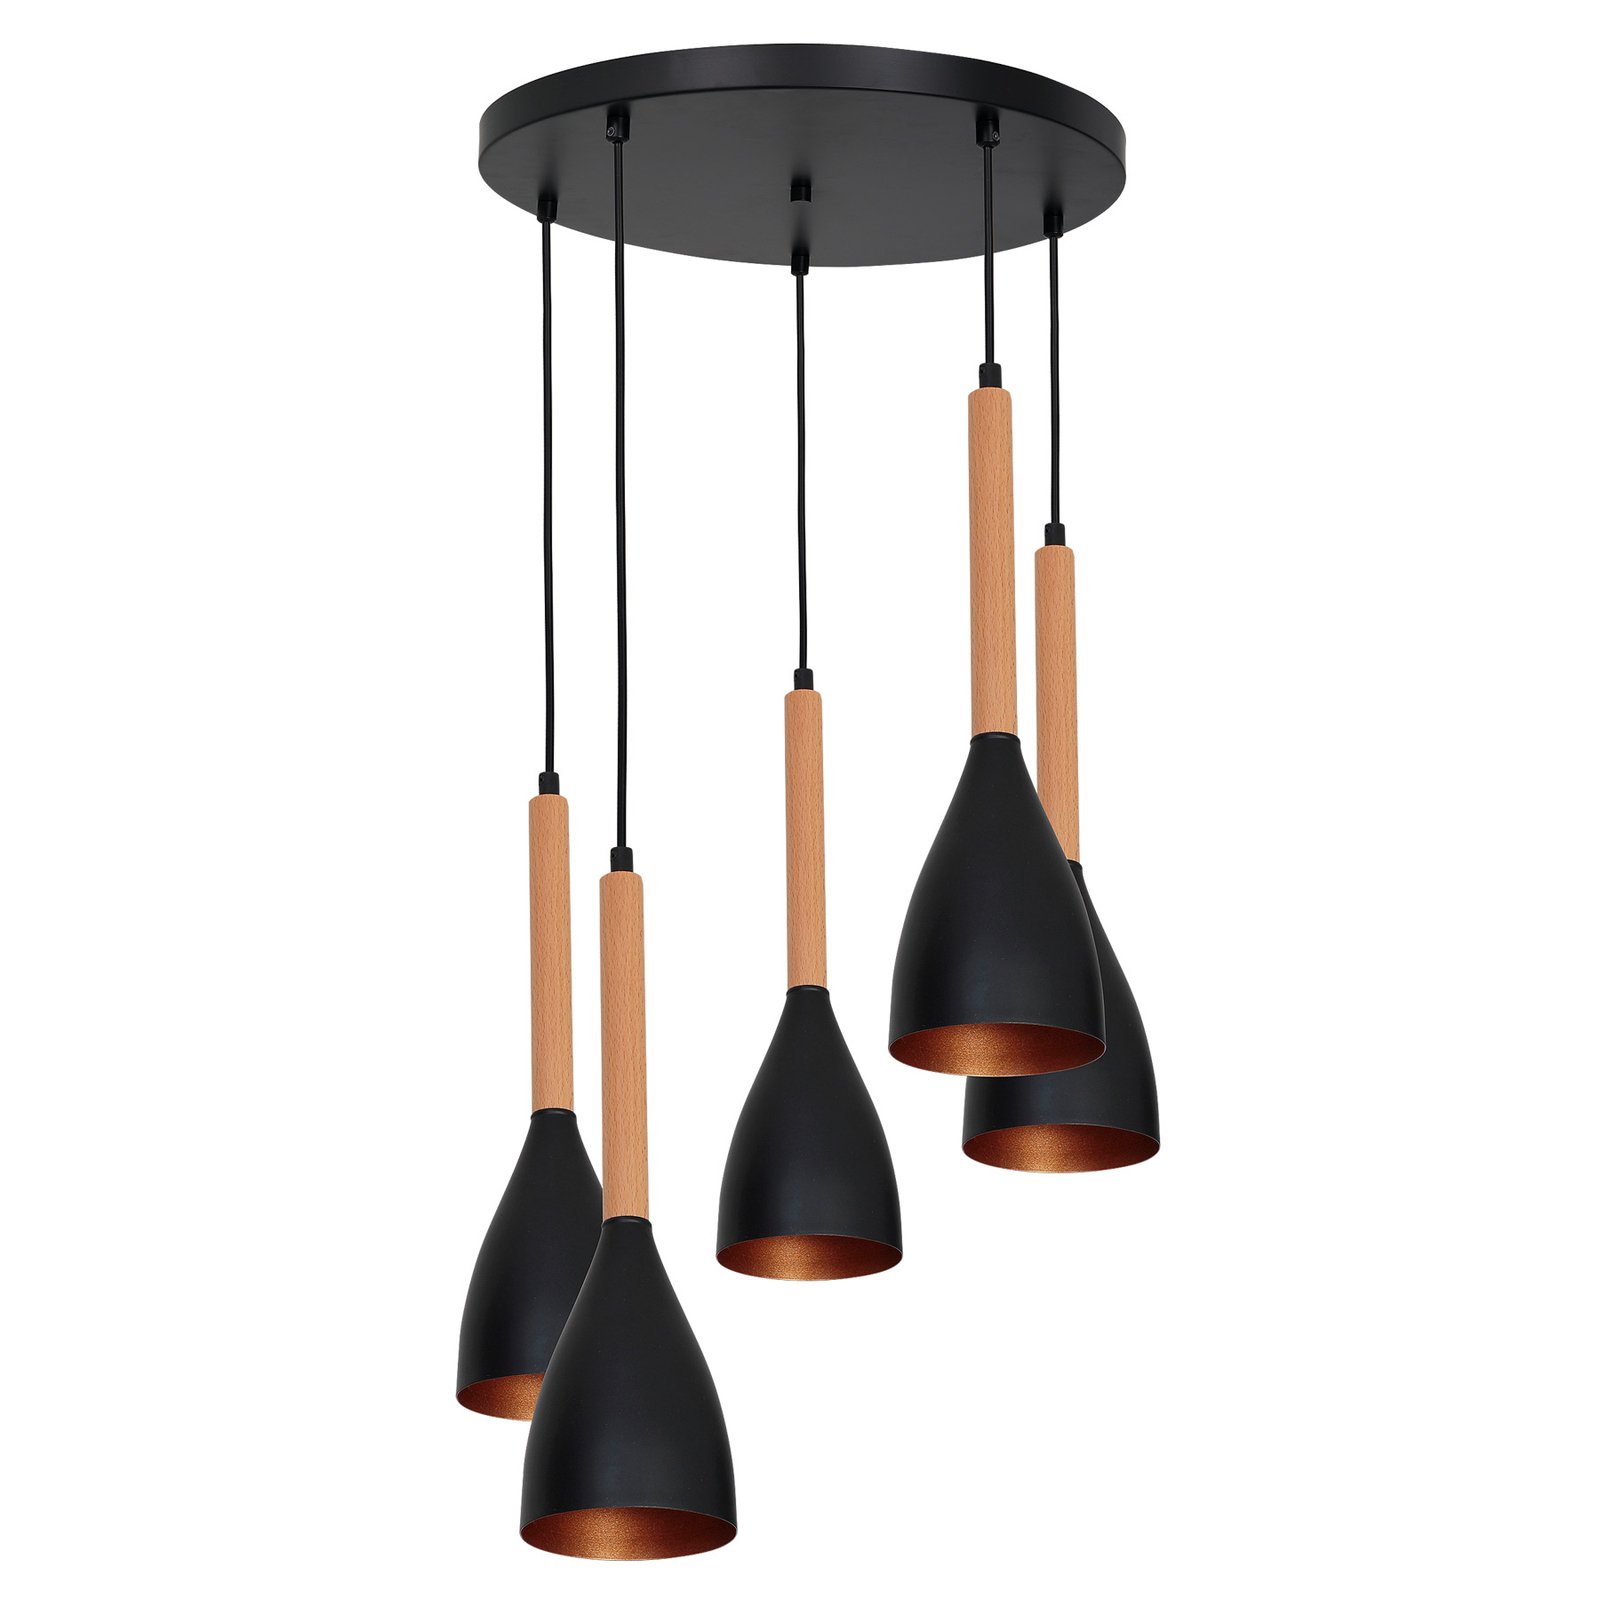 Hanglamp Muza 5-lamps rond zwart/goud/hout licht